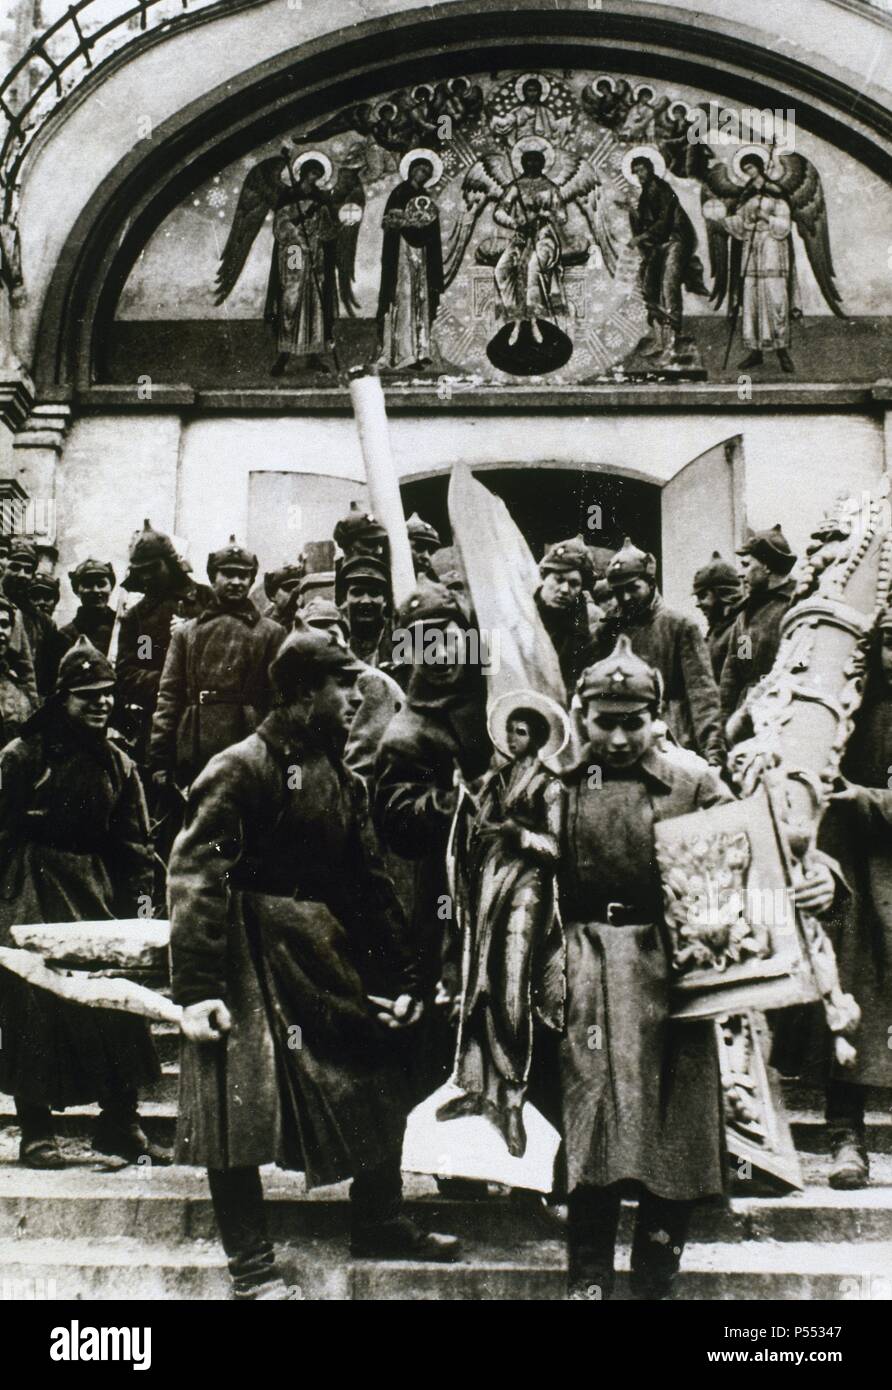 SEGUNDA GUERRA MUNDIAL. RUSIA. Ciudadanos y soldados soviéticos despojando a las iglesias de todo aquello que pudiese tener valor. En la imagen, uno de los conventos más antiguos de Rusia. Stock Photo